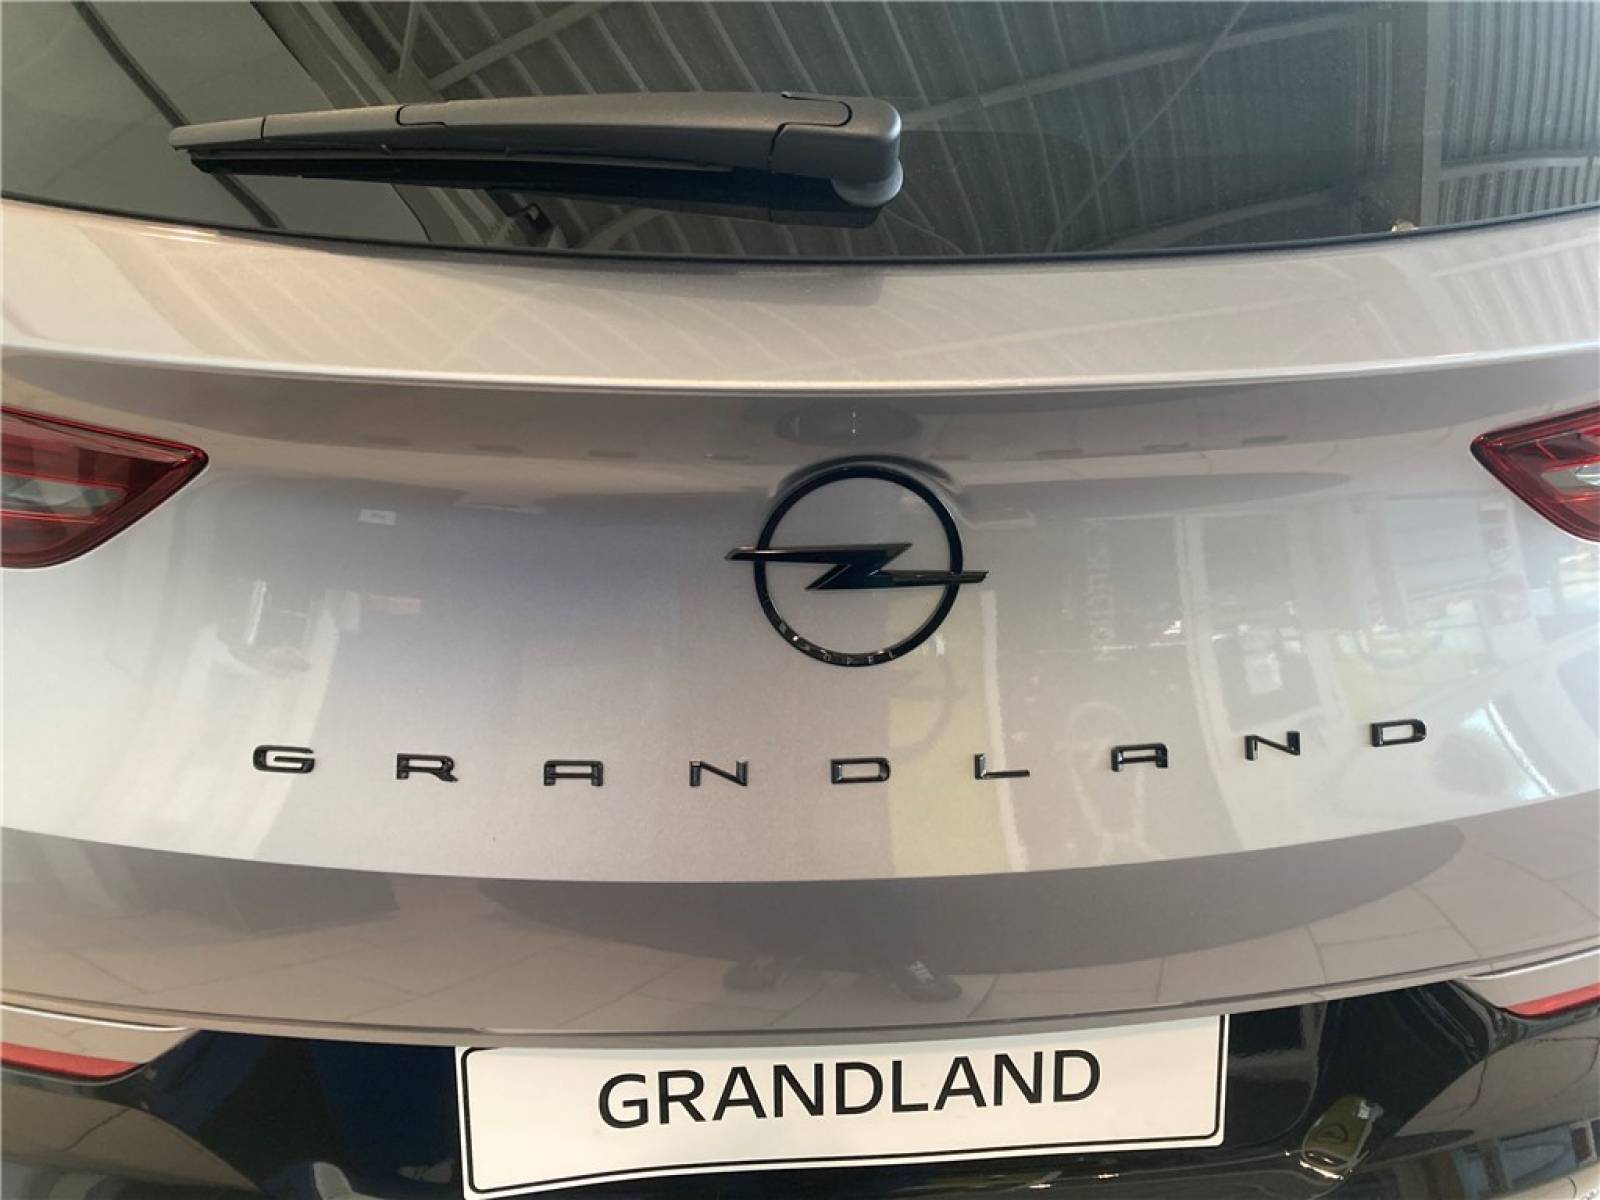 OPEL Grandland 1.2 Turbo 130 ch BVA8 - véhicule d'occasion - Groupe Guillet - Opel Magicauto - Montceau-les-Mines - 71300 - Montceau-les-Mines - 9